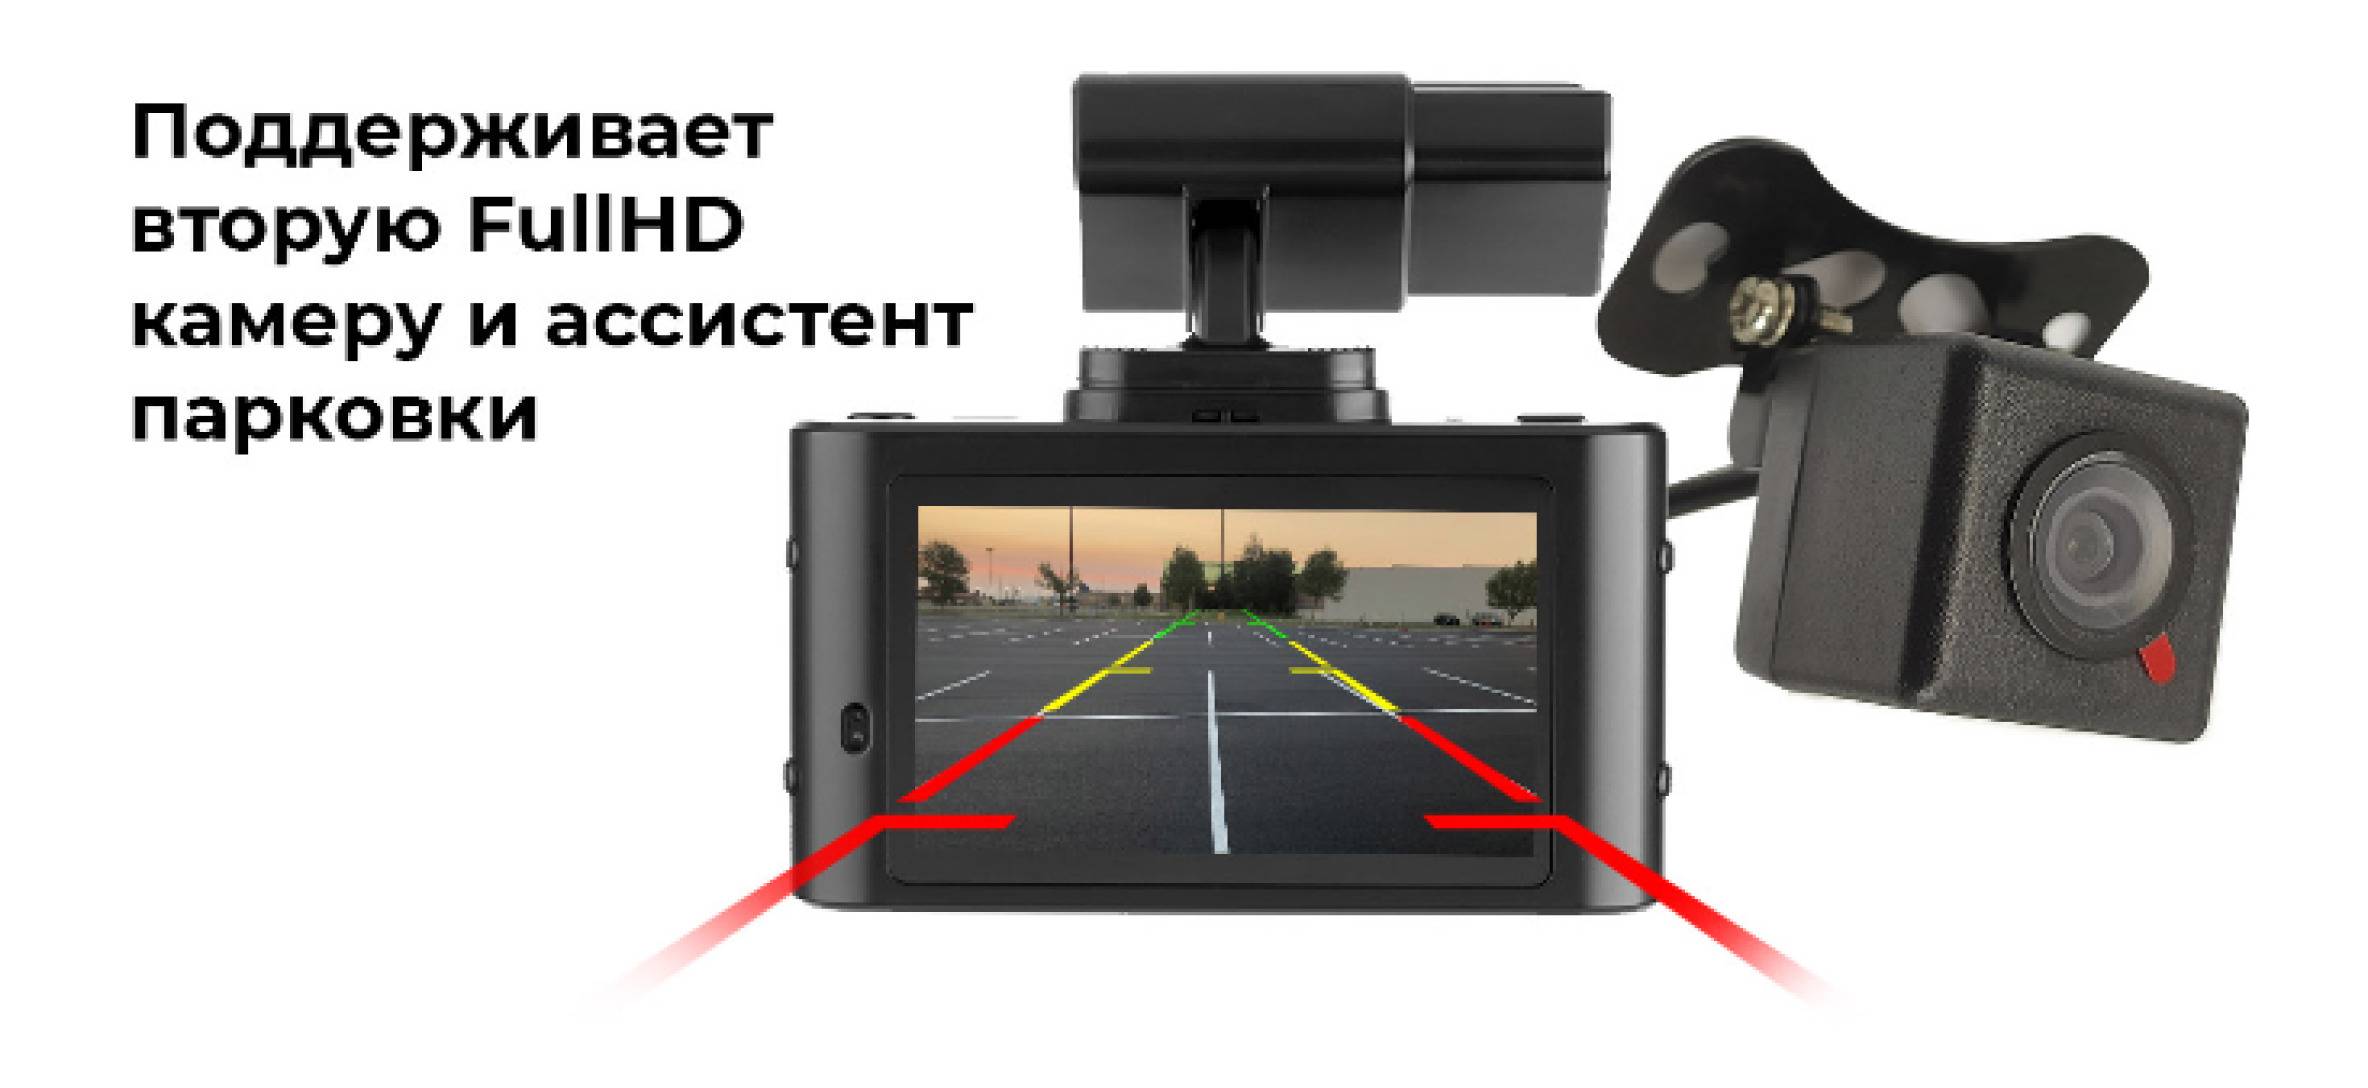 Artway 620 инструкция на русском